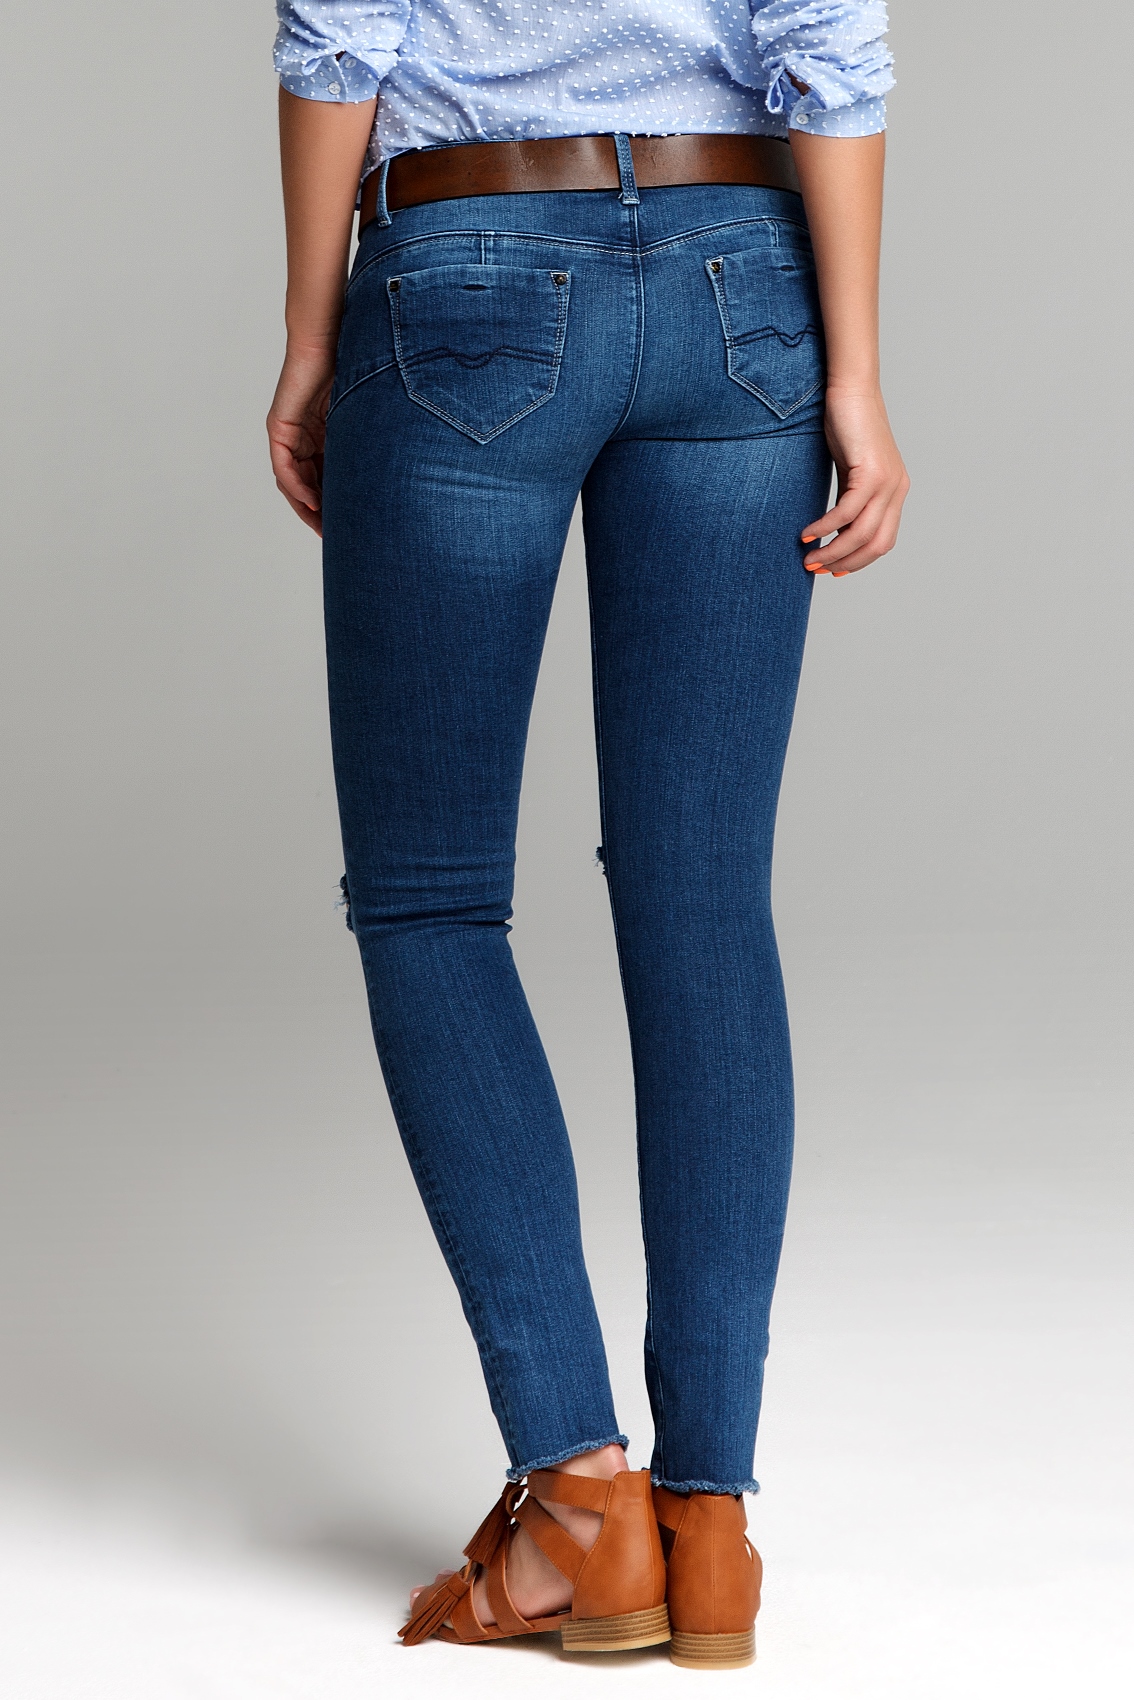 Заказать джинсы женские. Джинсы женские. Красивые женские джинсы. Брендовые джинсы женские. Длинные джинсы женские.